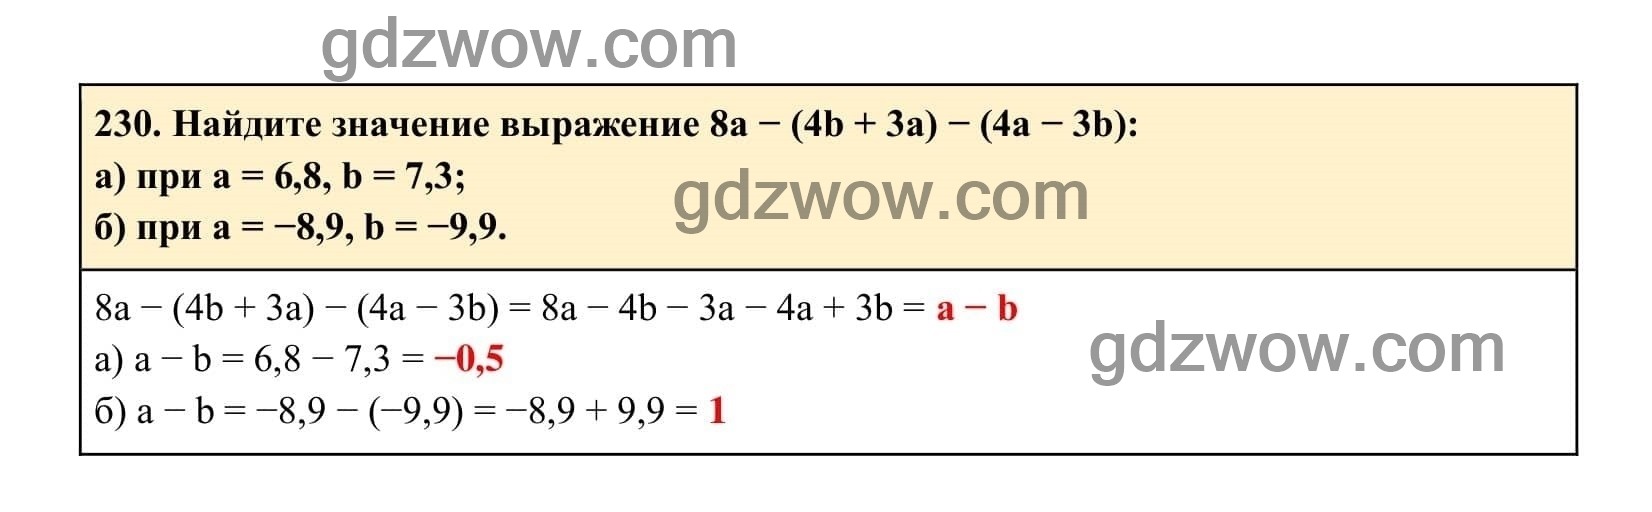 Упражнение 230 - ГДЗ по Алгебре 7 класс Учебник Макарычев (решебник) - GDZwow